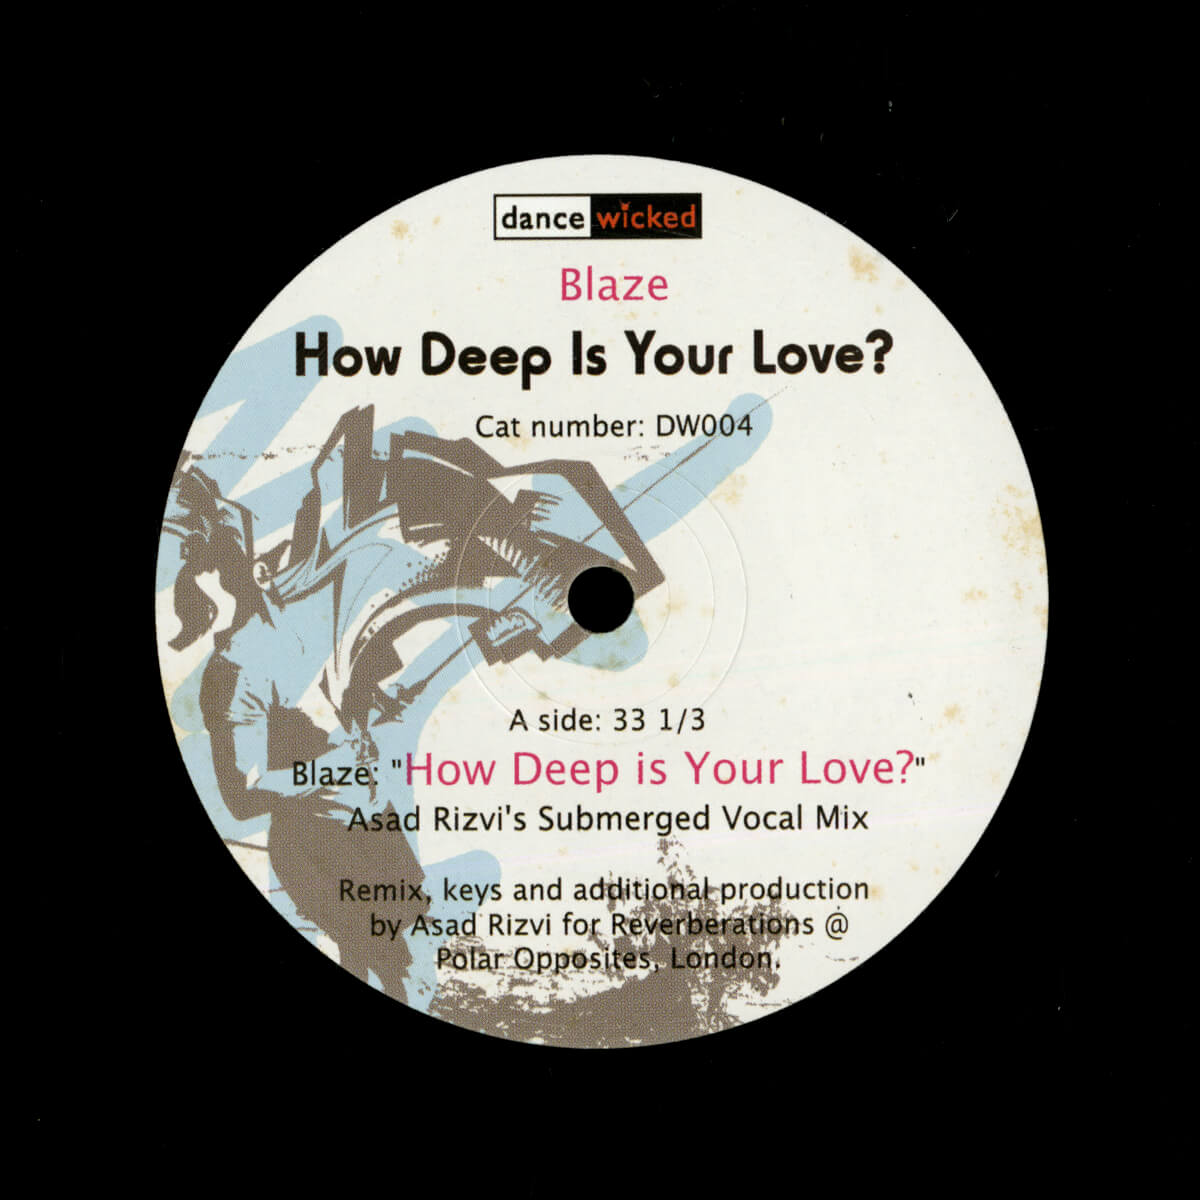 Blaze – How Deep Is Your Love?